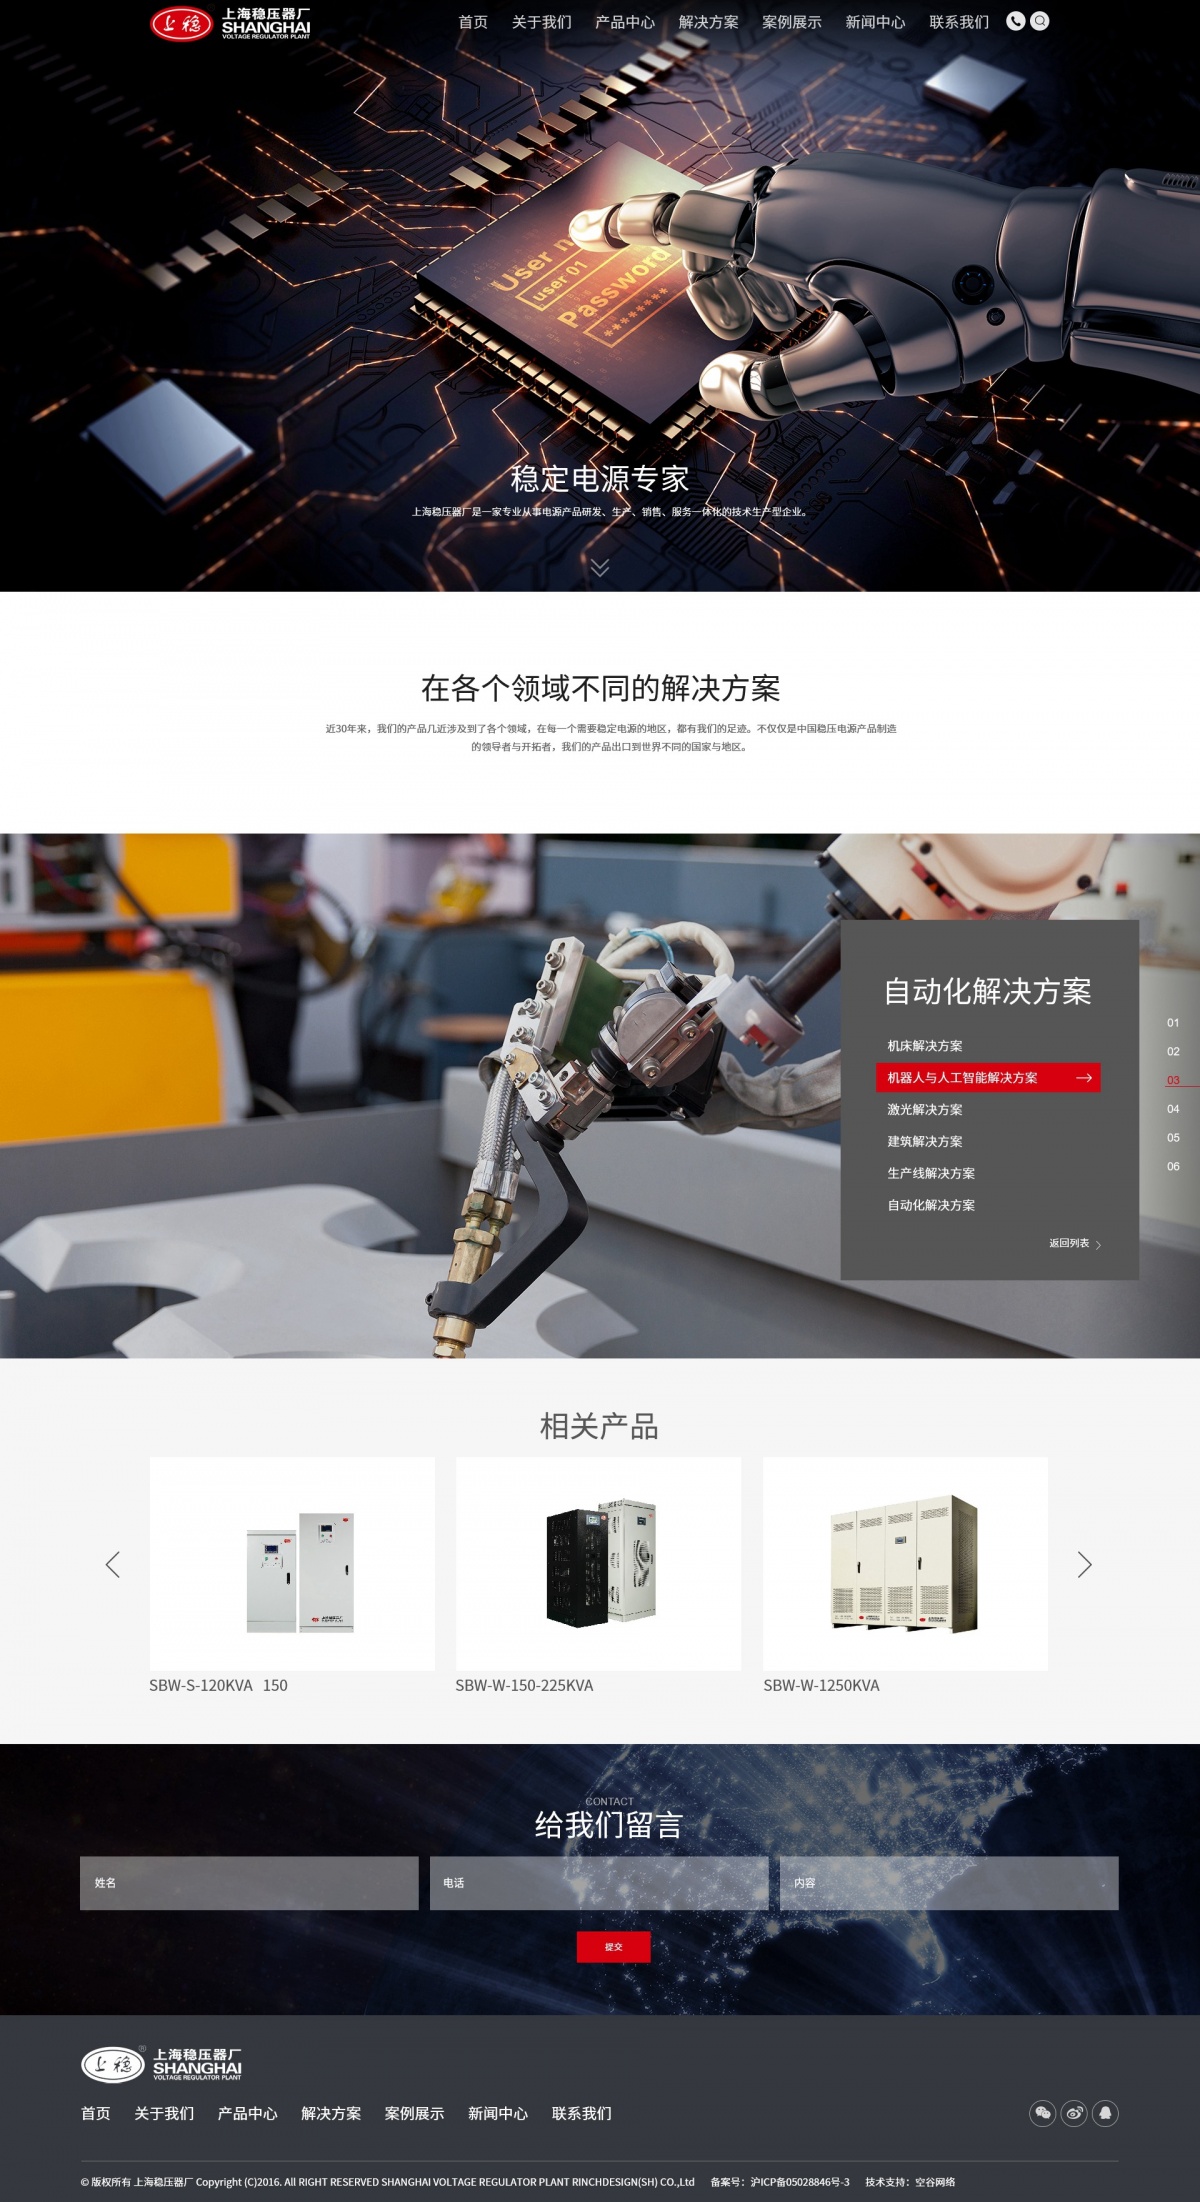 上海稳压器厂自适应高端网站建设项目成功上线